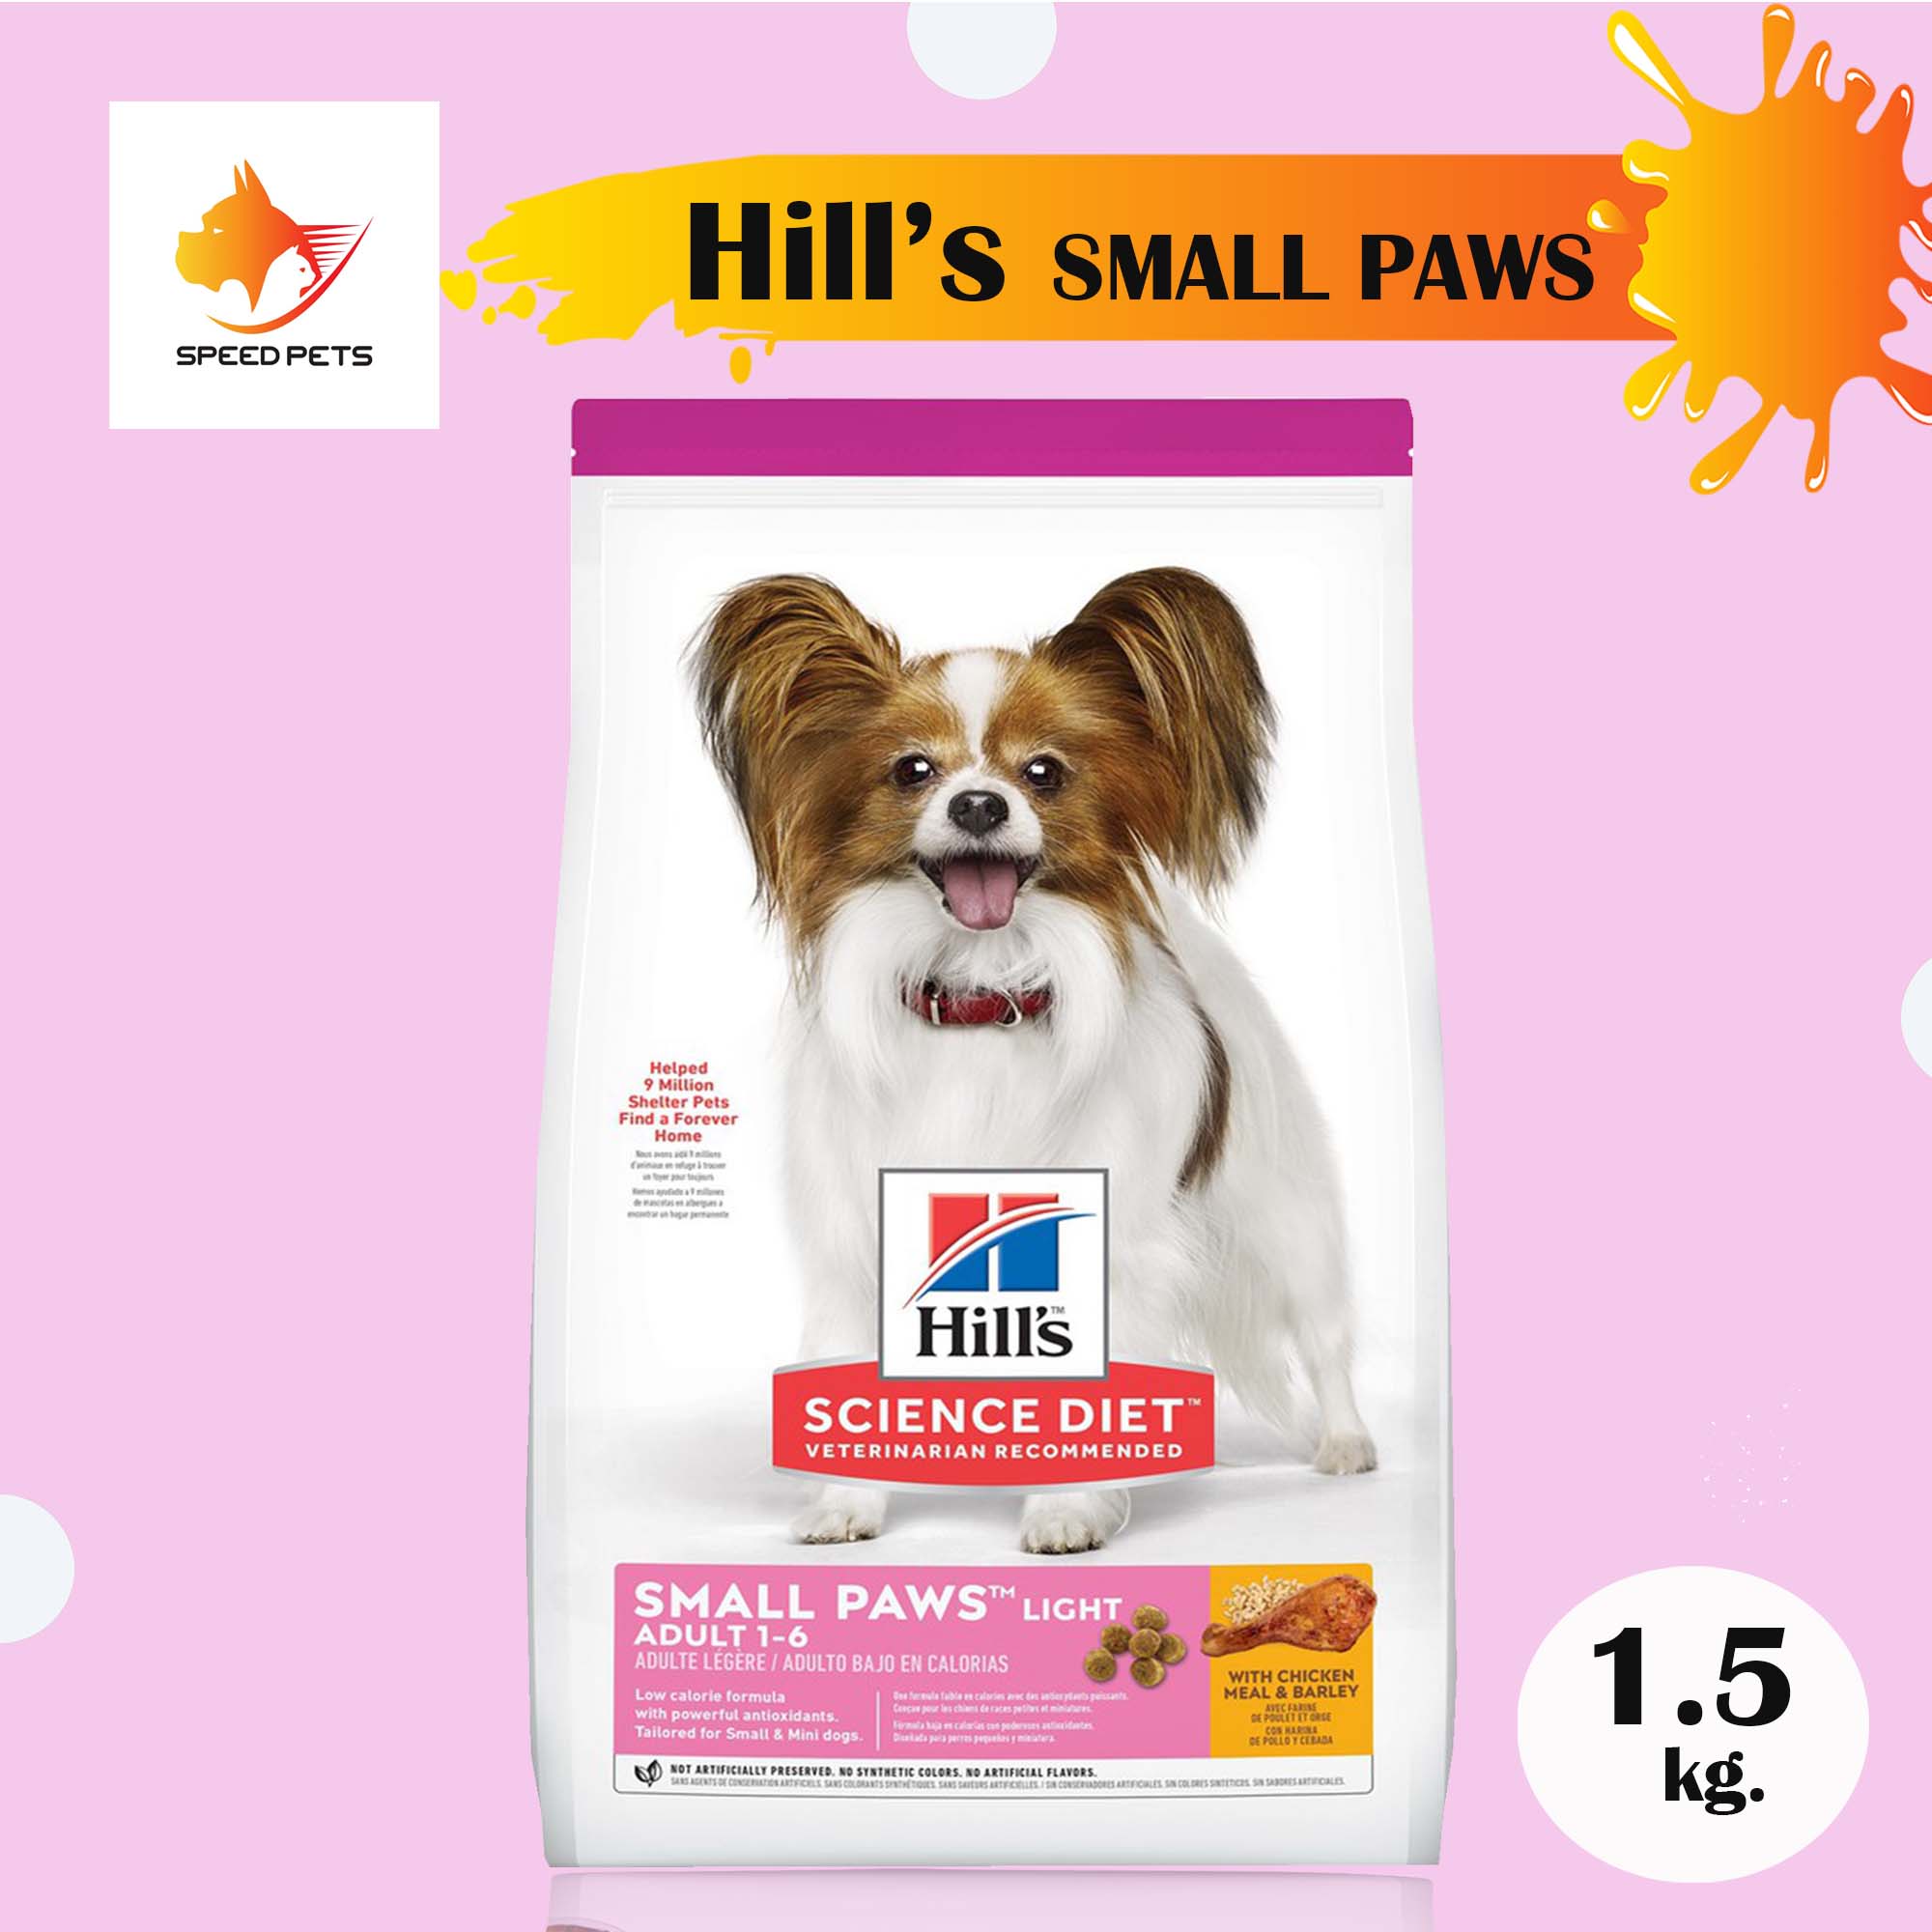 Hill's Light small paws dog food อาหารสุนัข พันธุ์เล็ก ควบคุมน้ำหนัก ขนาด 1.5 กก.